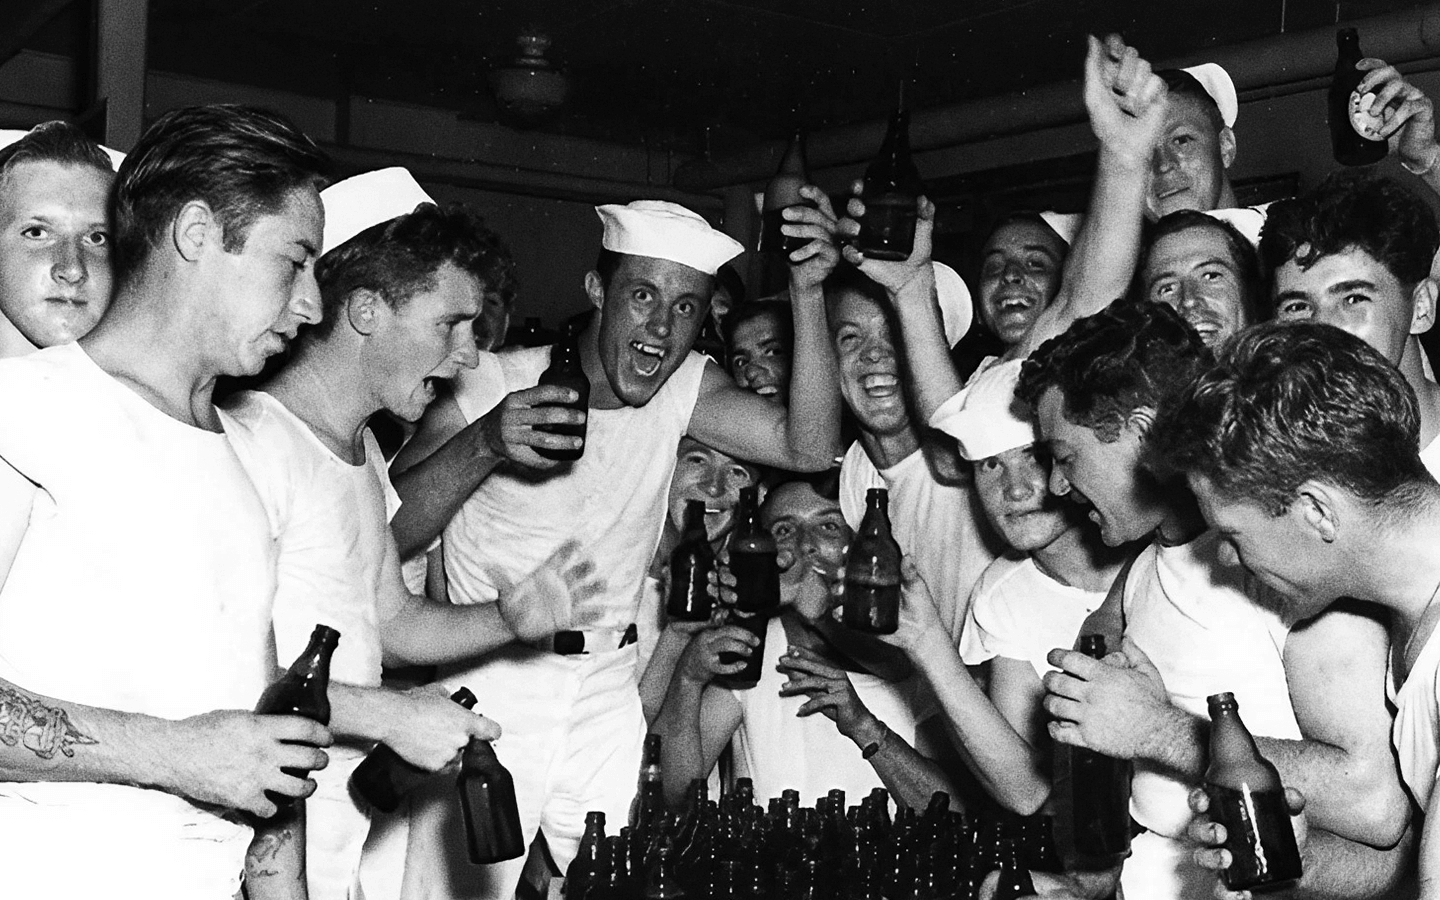 Soldados comemoram em um bar segurando bebidas e expressões felizes.